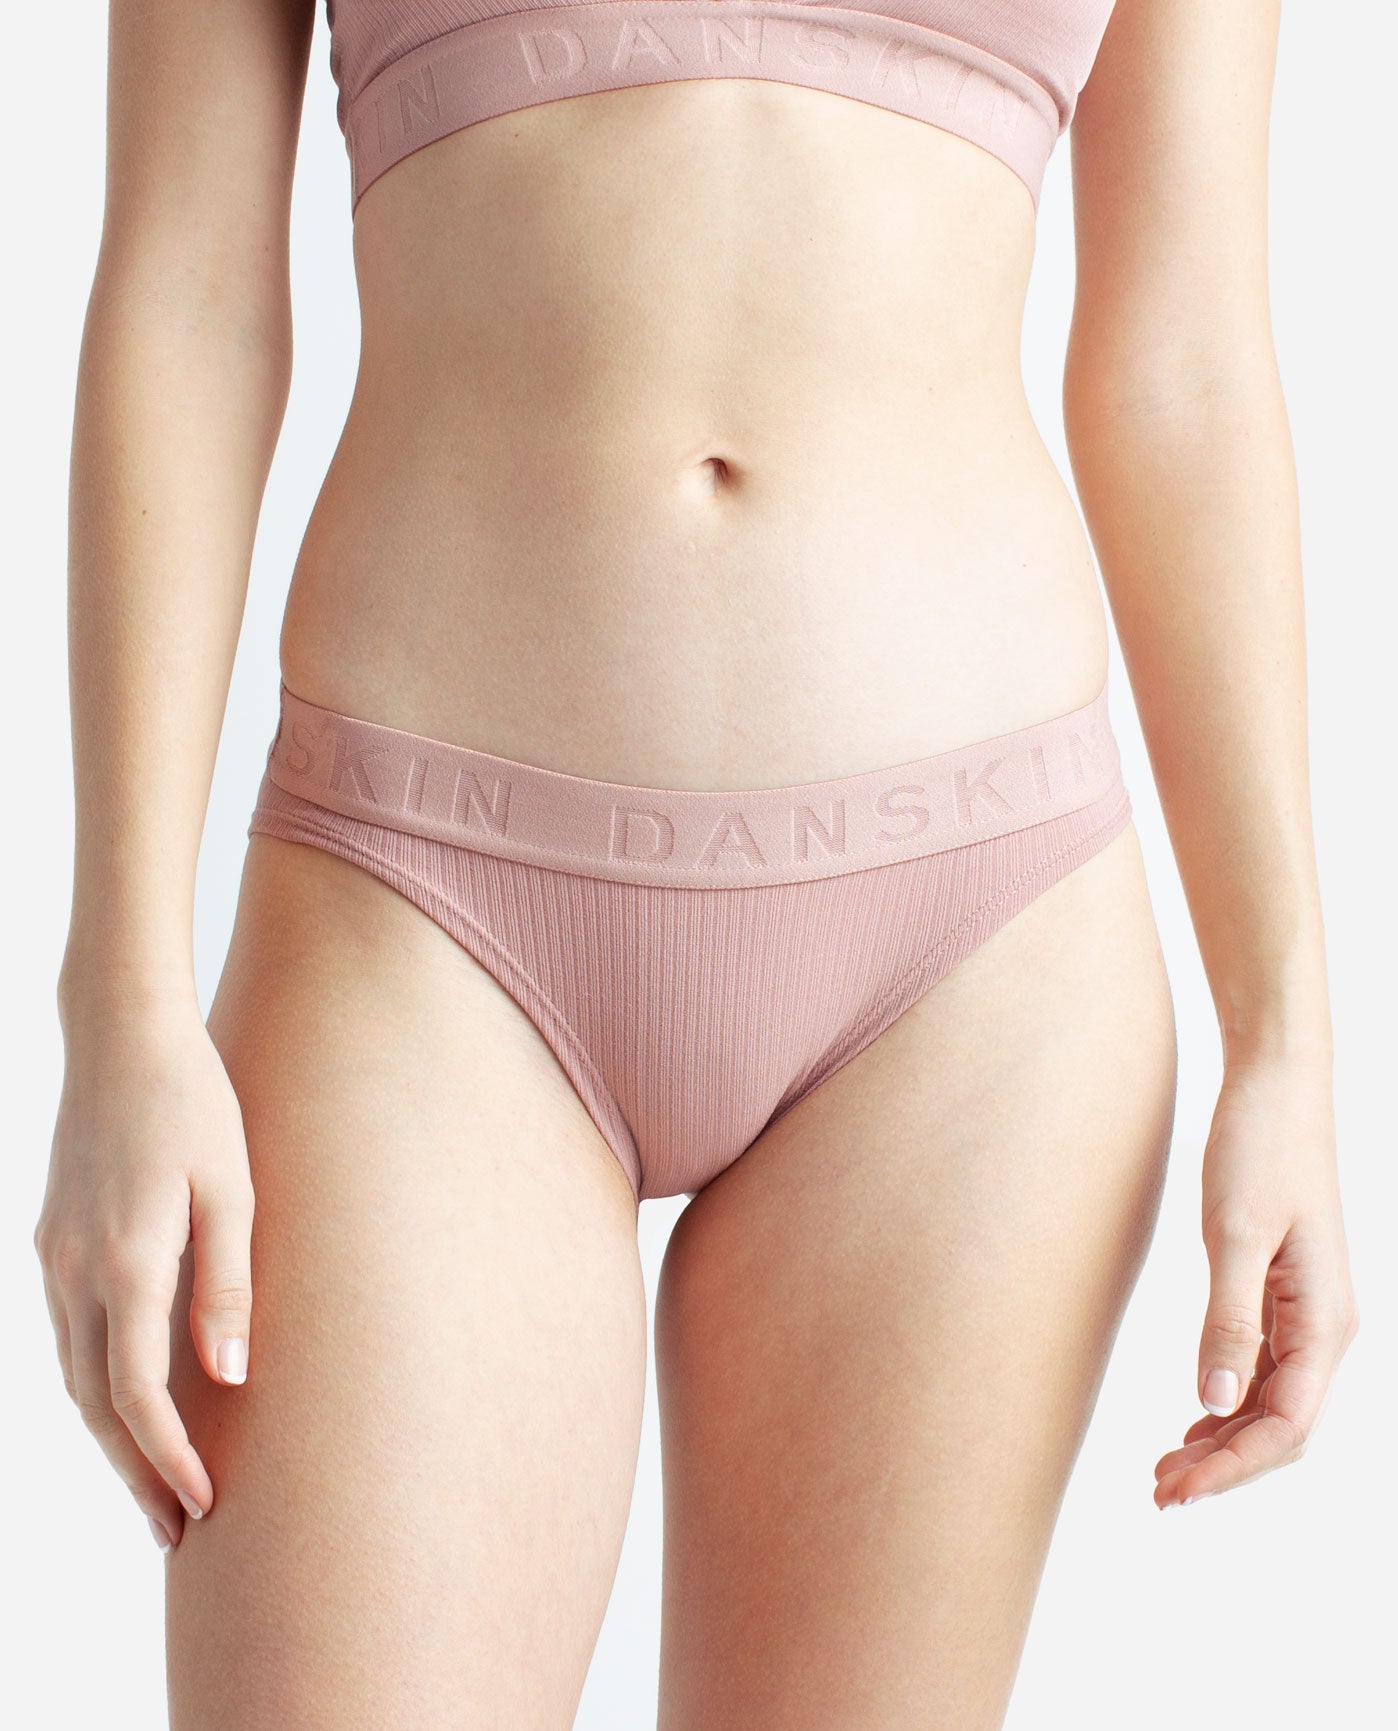 Buy Danskin Underwear online